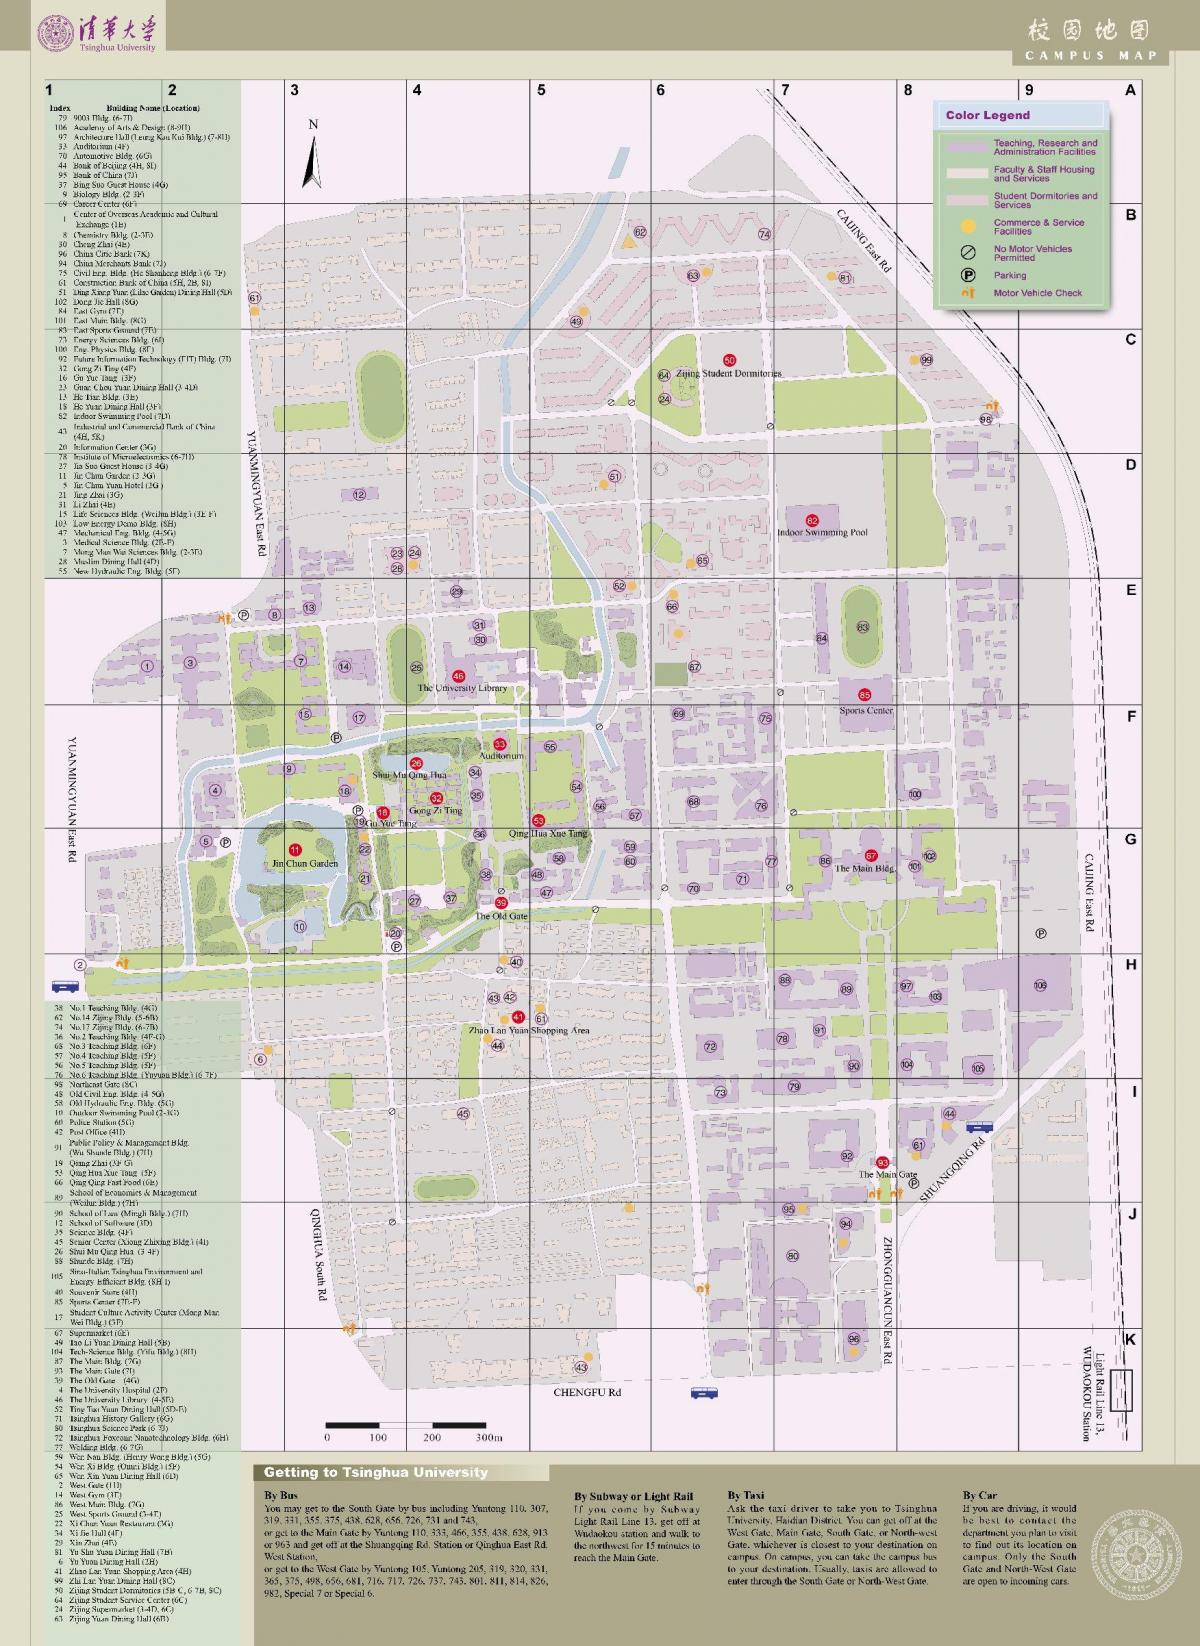 tsinghuan kampuksella kartta